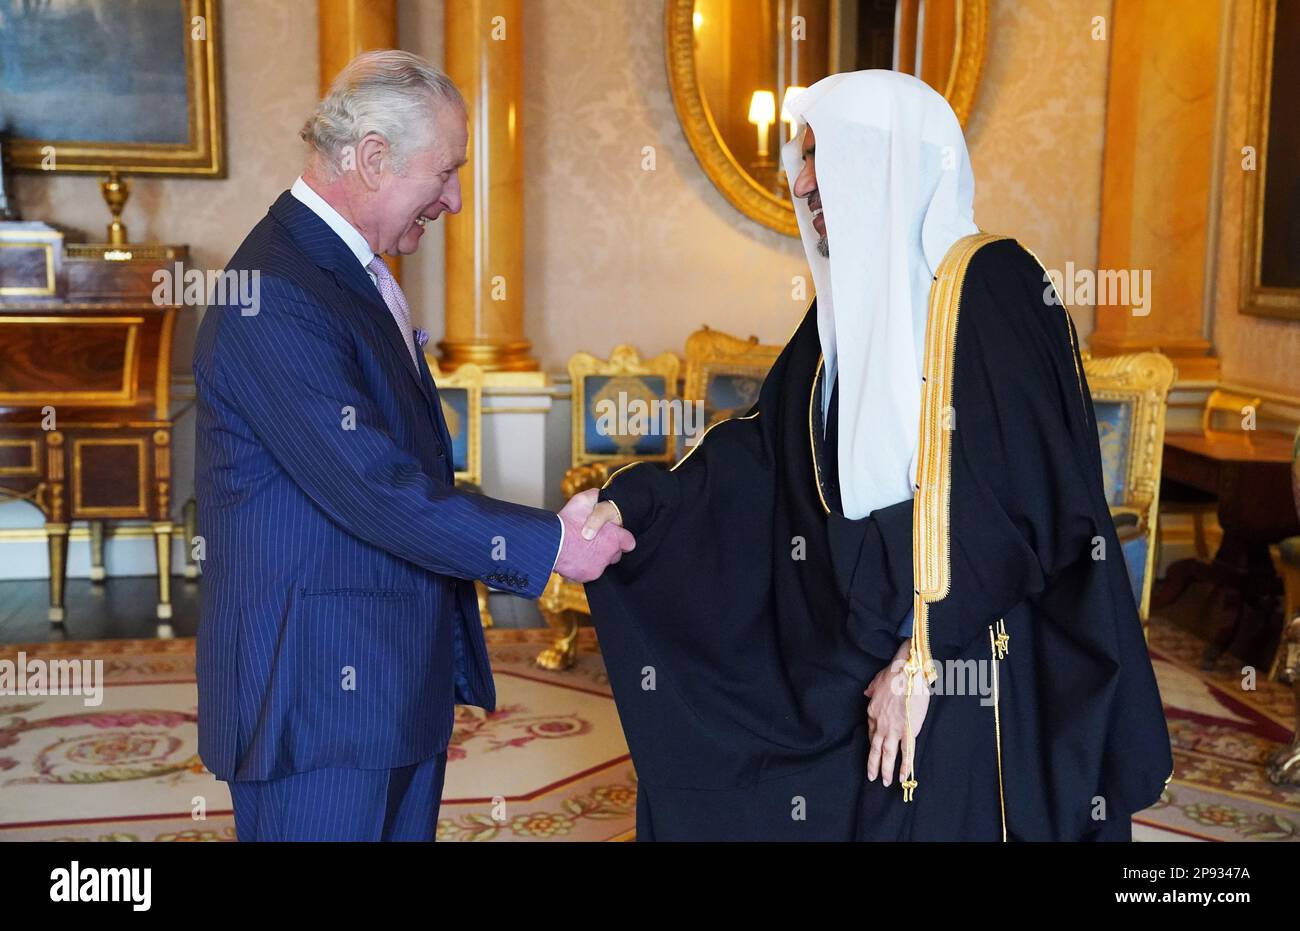 König Karl III. Empfängt Dr. Mohammed Al-Issa, Generalsekretär der muslimischen Weltliga, während einer Audienz im Buckingham Palace, London. Foto: Freitag, 10. März 2023. Stockfoto